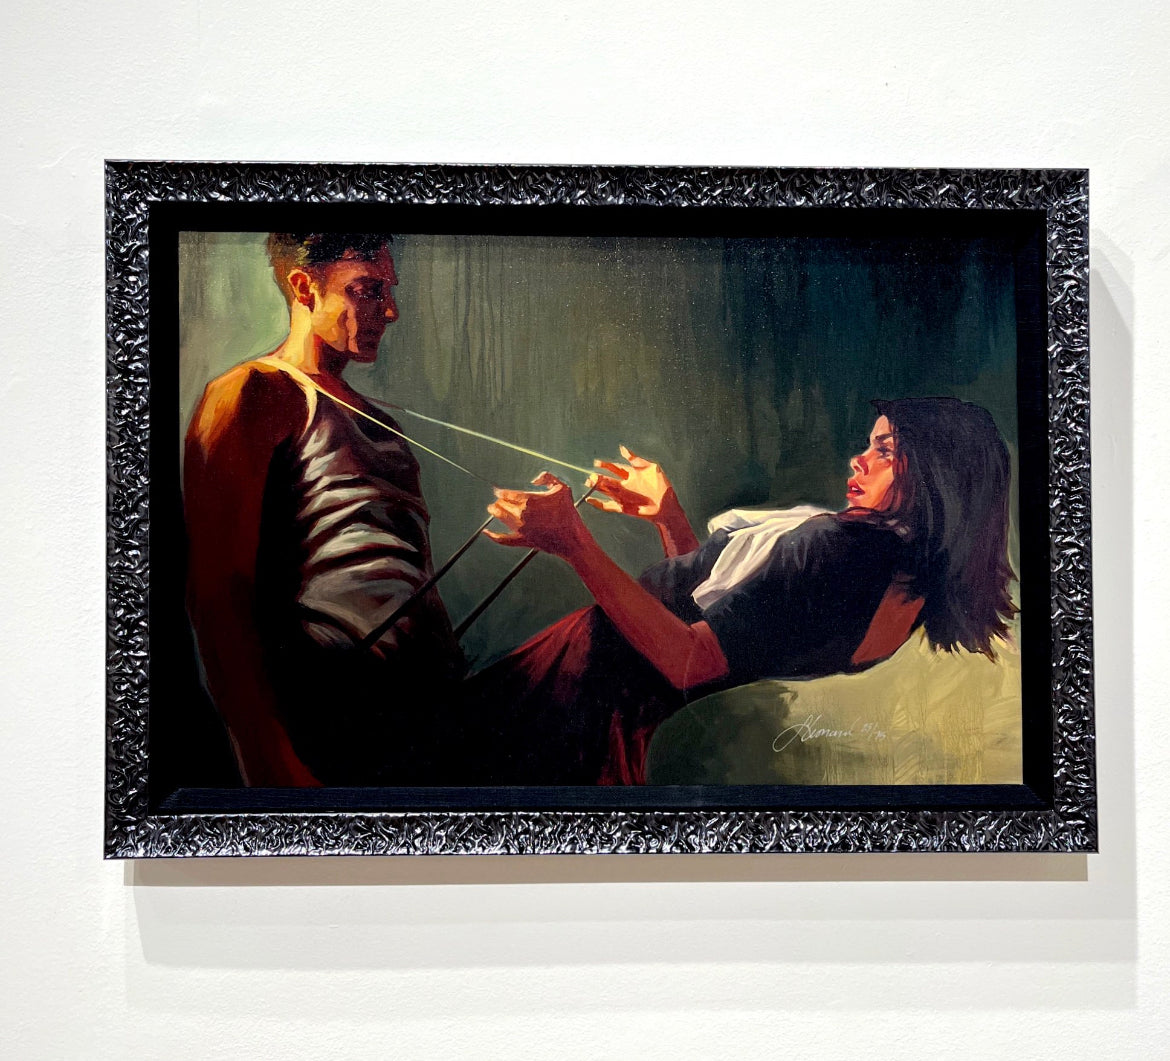 Gabe Leonard's artwork custom framed by Ao5 Gallery in black shiny ornate frame.